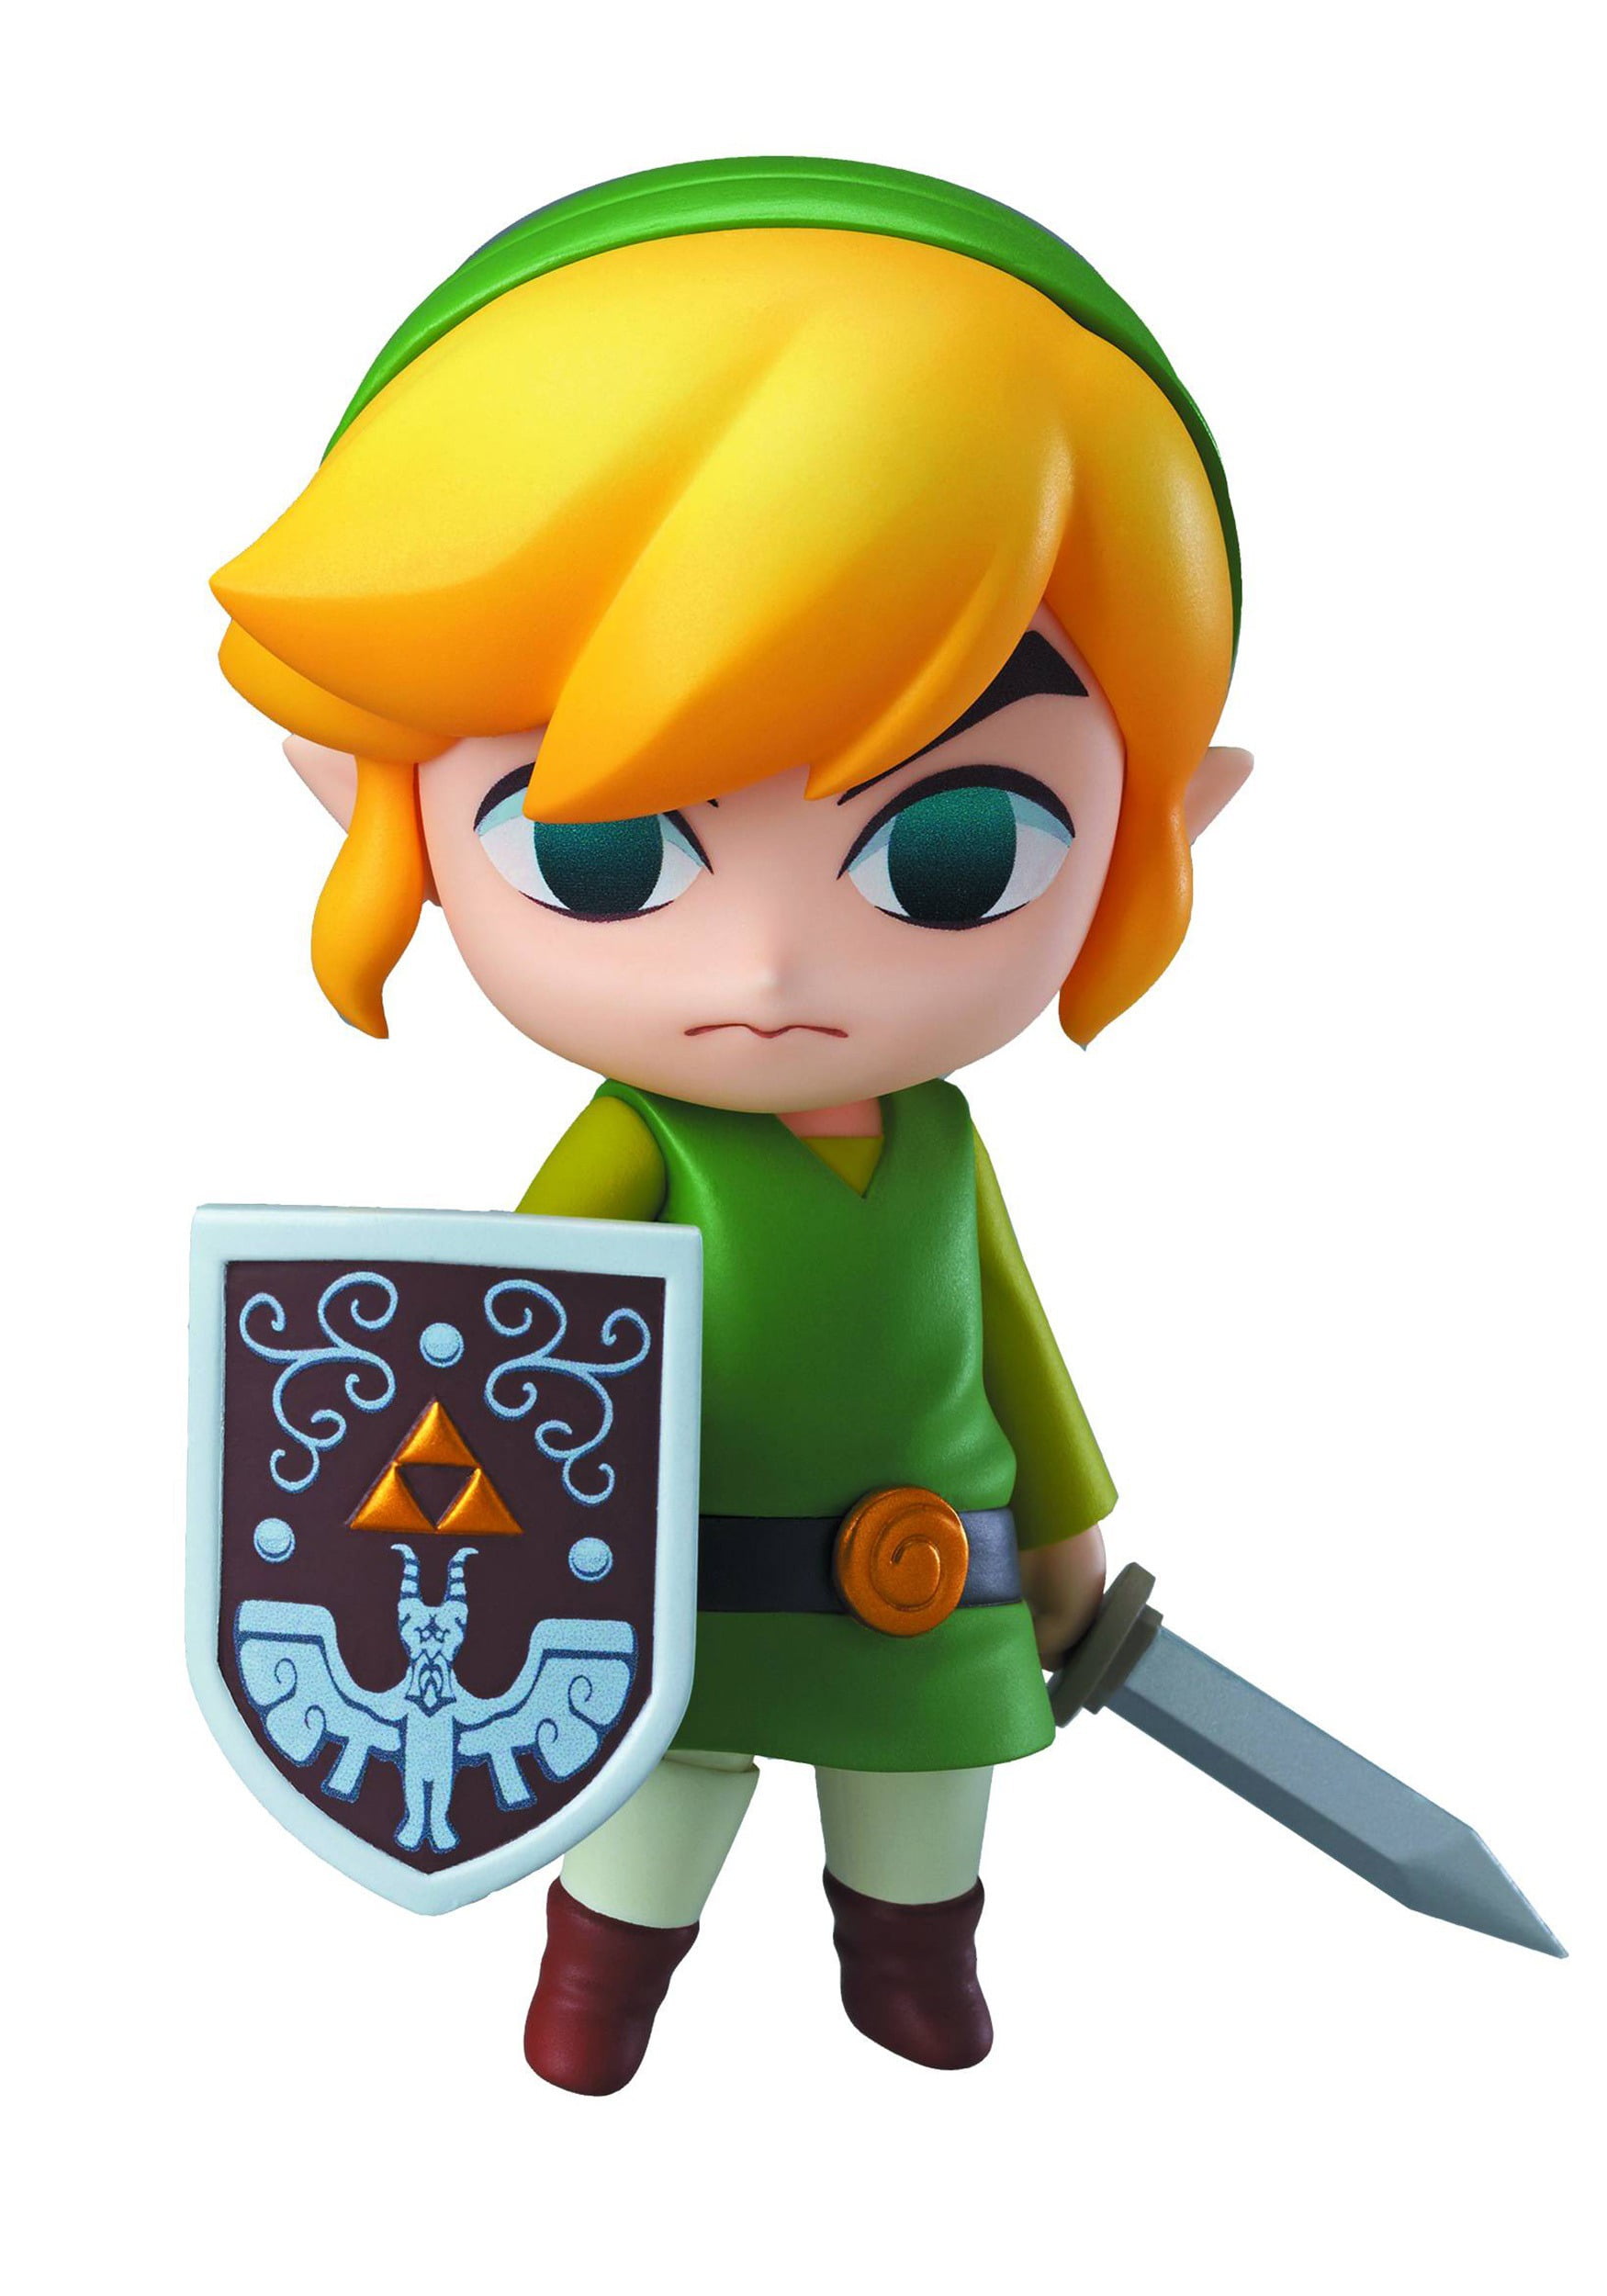 Good Smile Company Legend Of Zelda: Wind Waker Link Nendoroid Action Figure  : Target